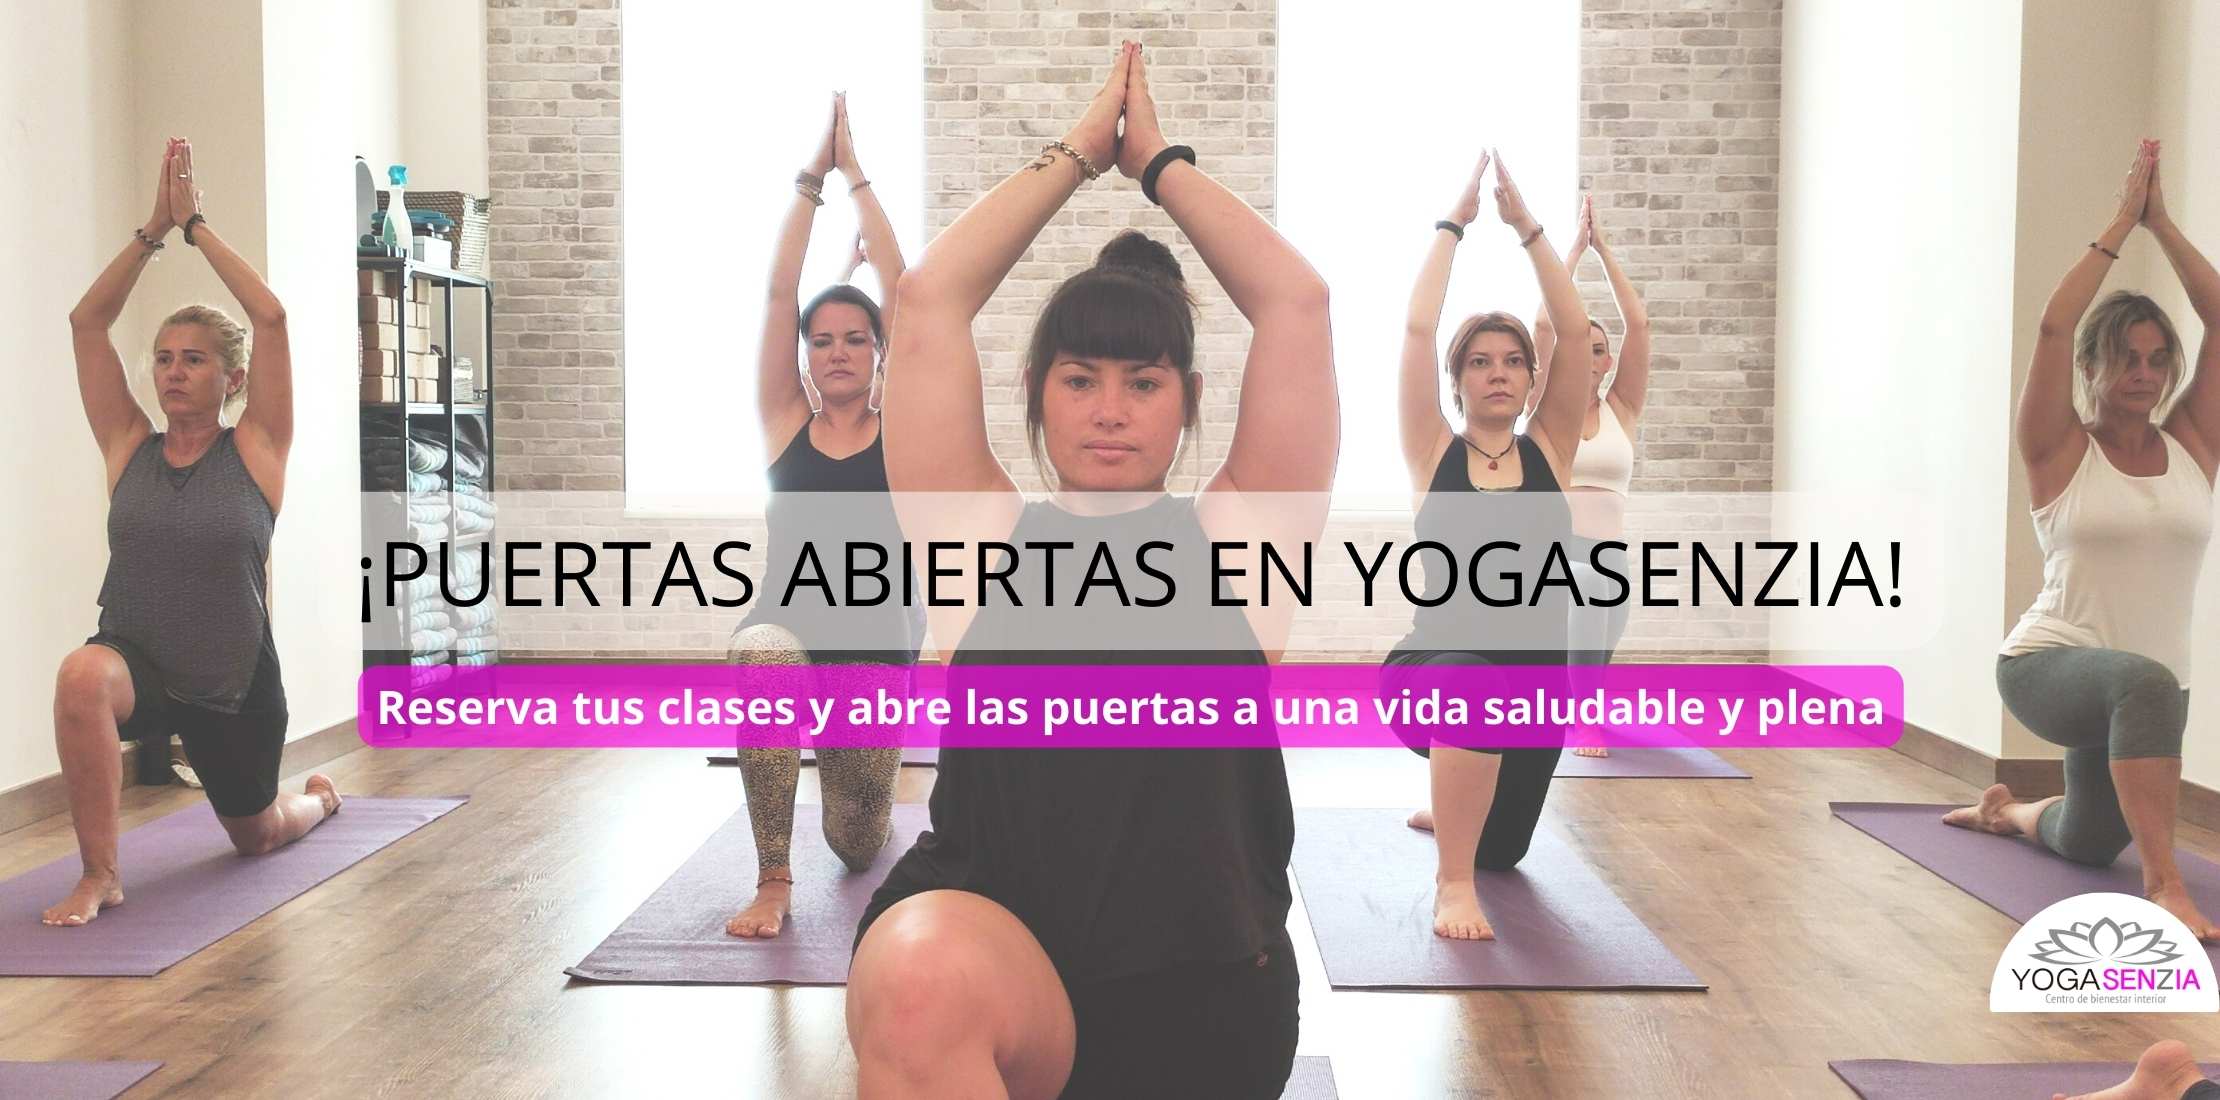 Semana de puertas abiertas ¡Ven a practicar yoga con nosotros